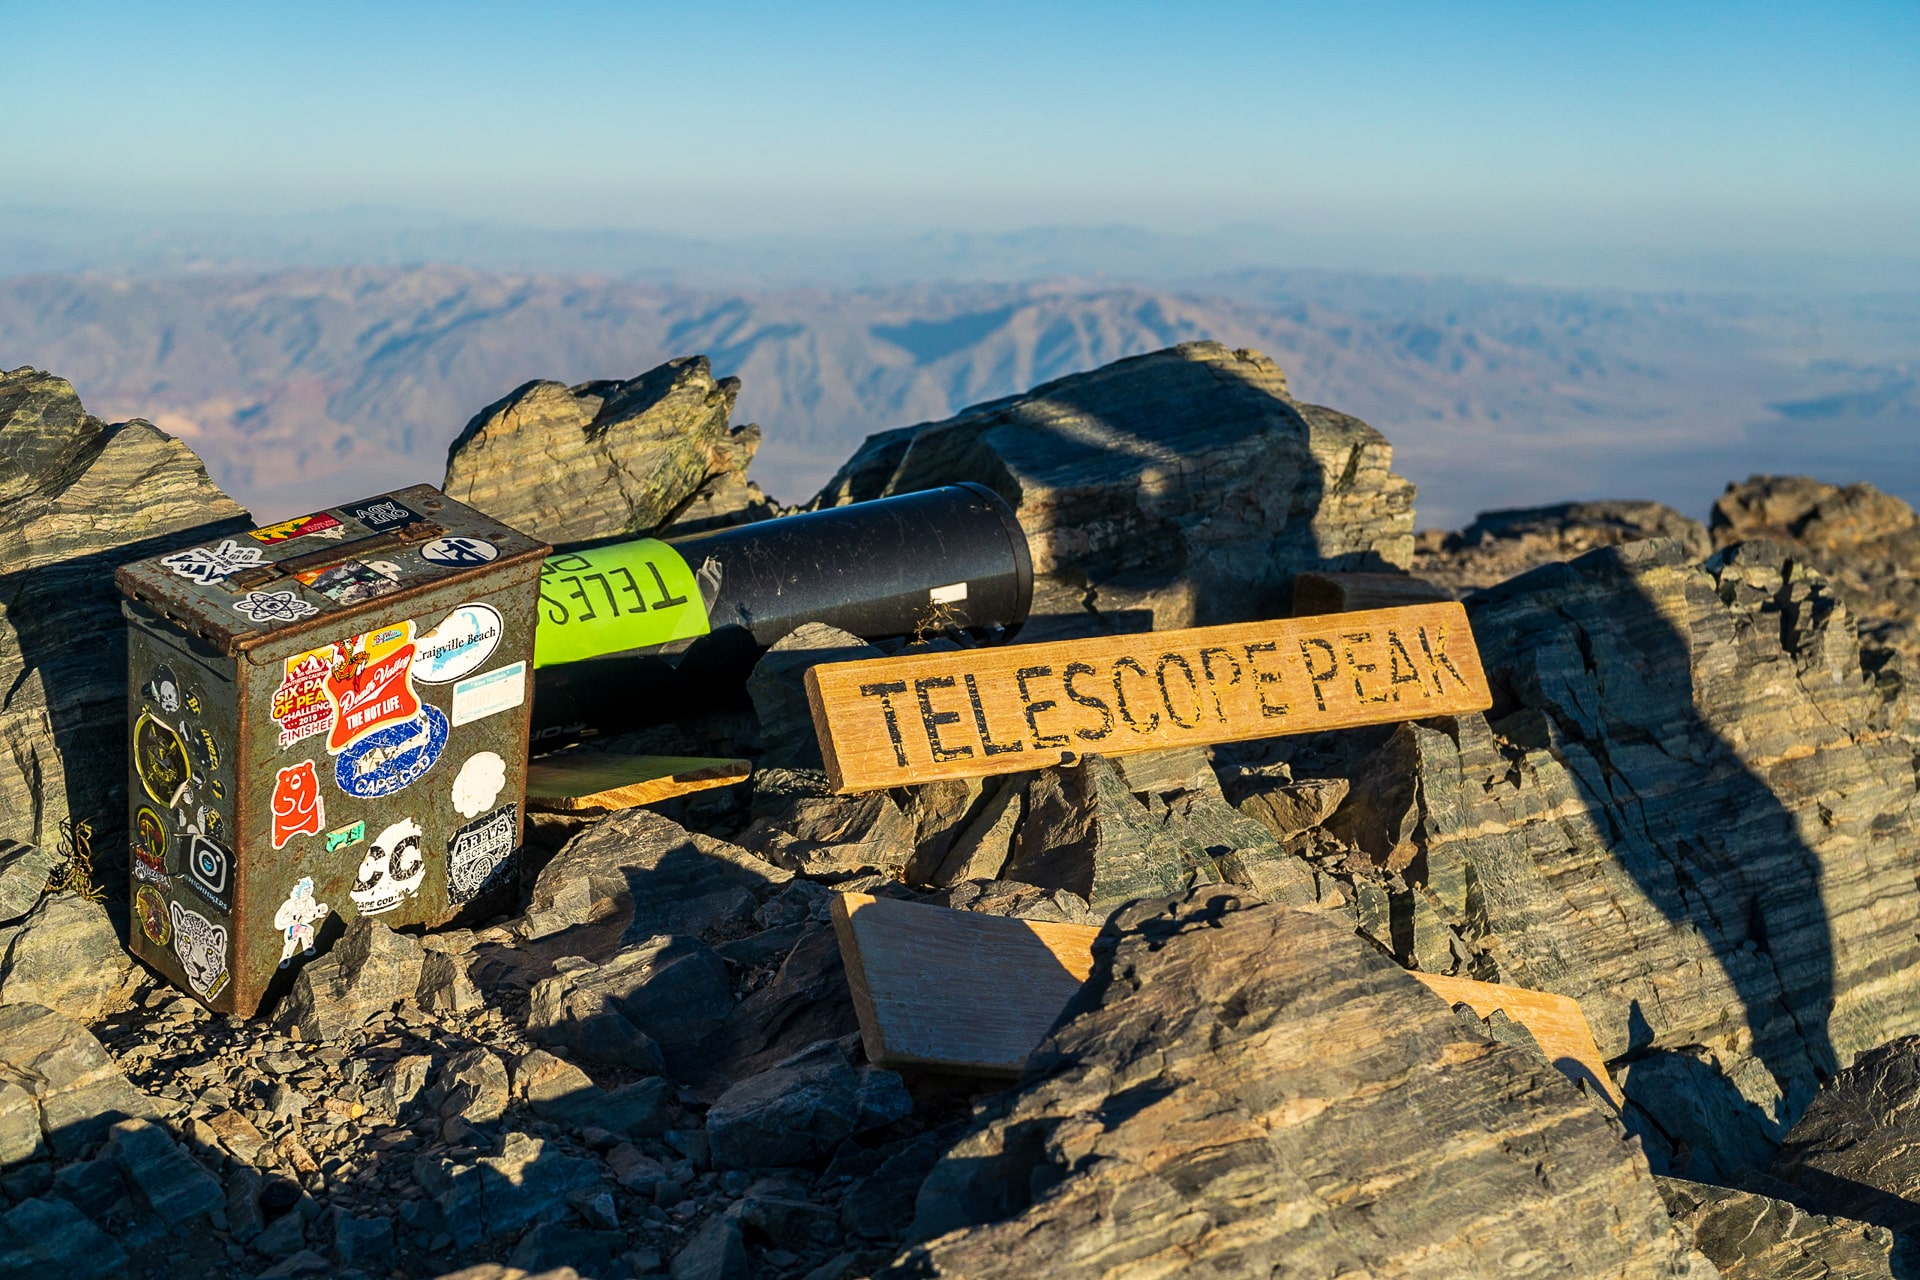 Telescope Peak, de hoogste top in Death Valley.